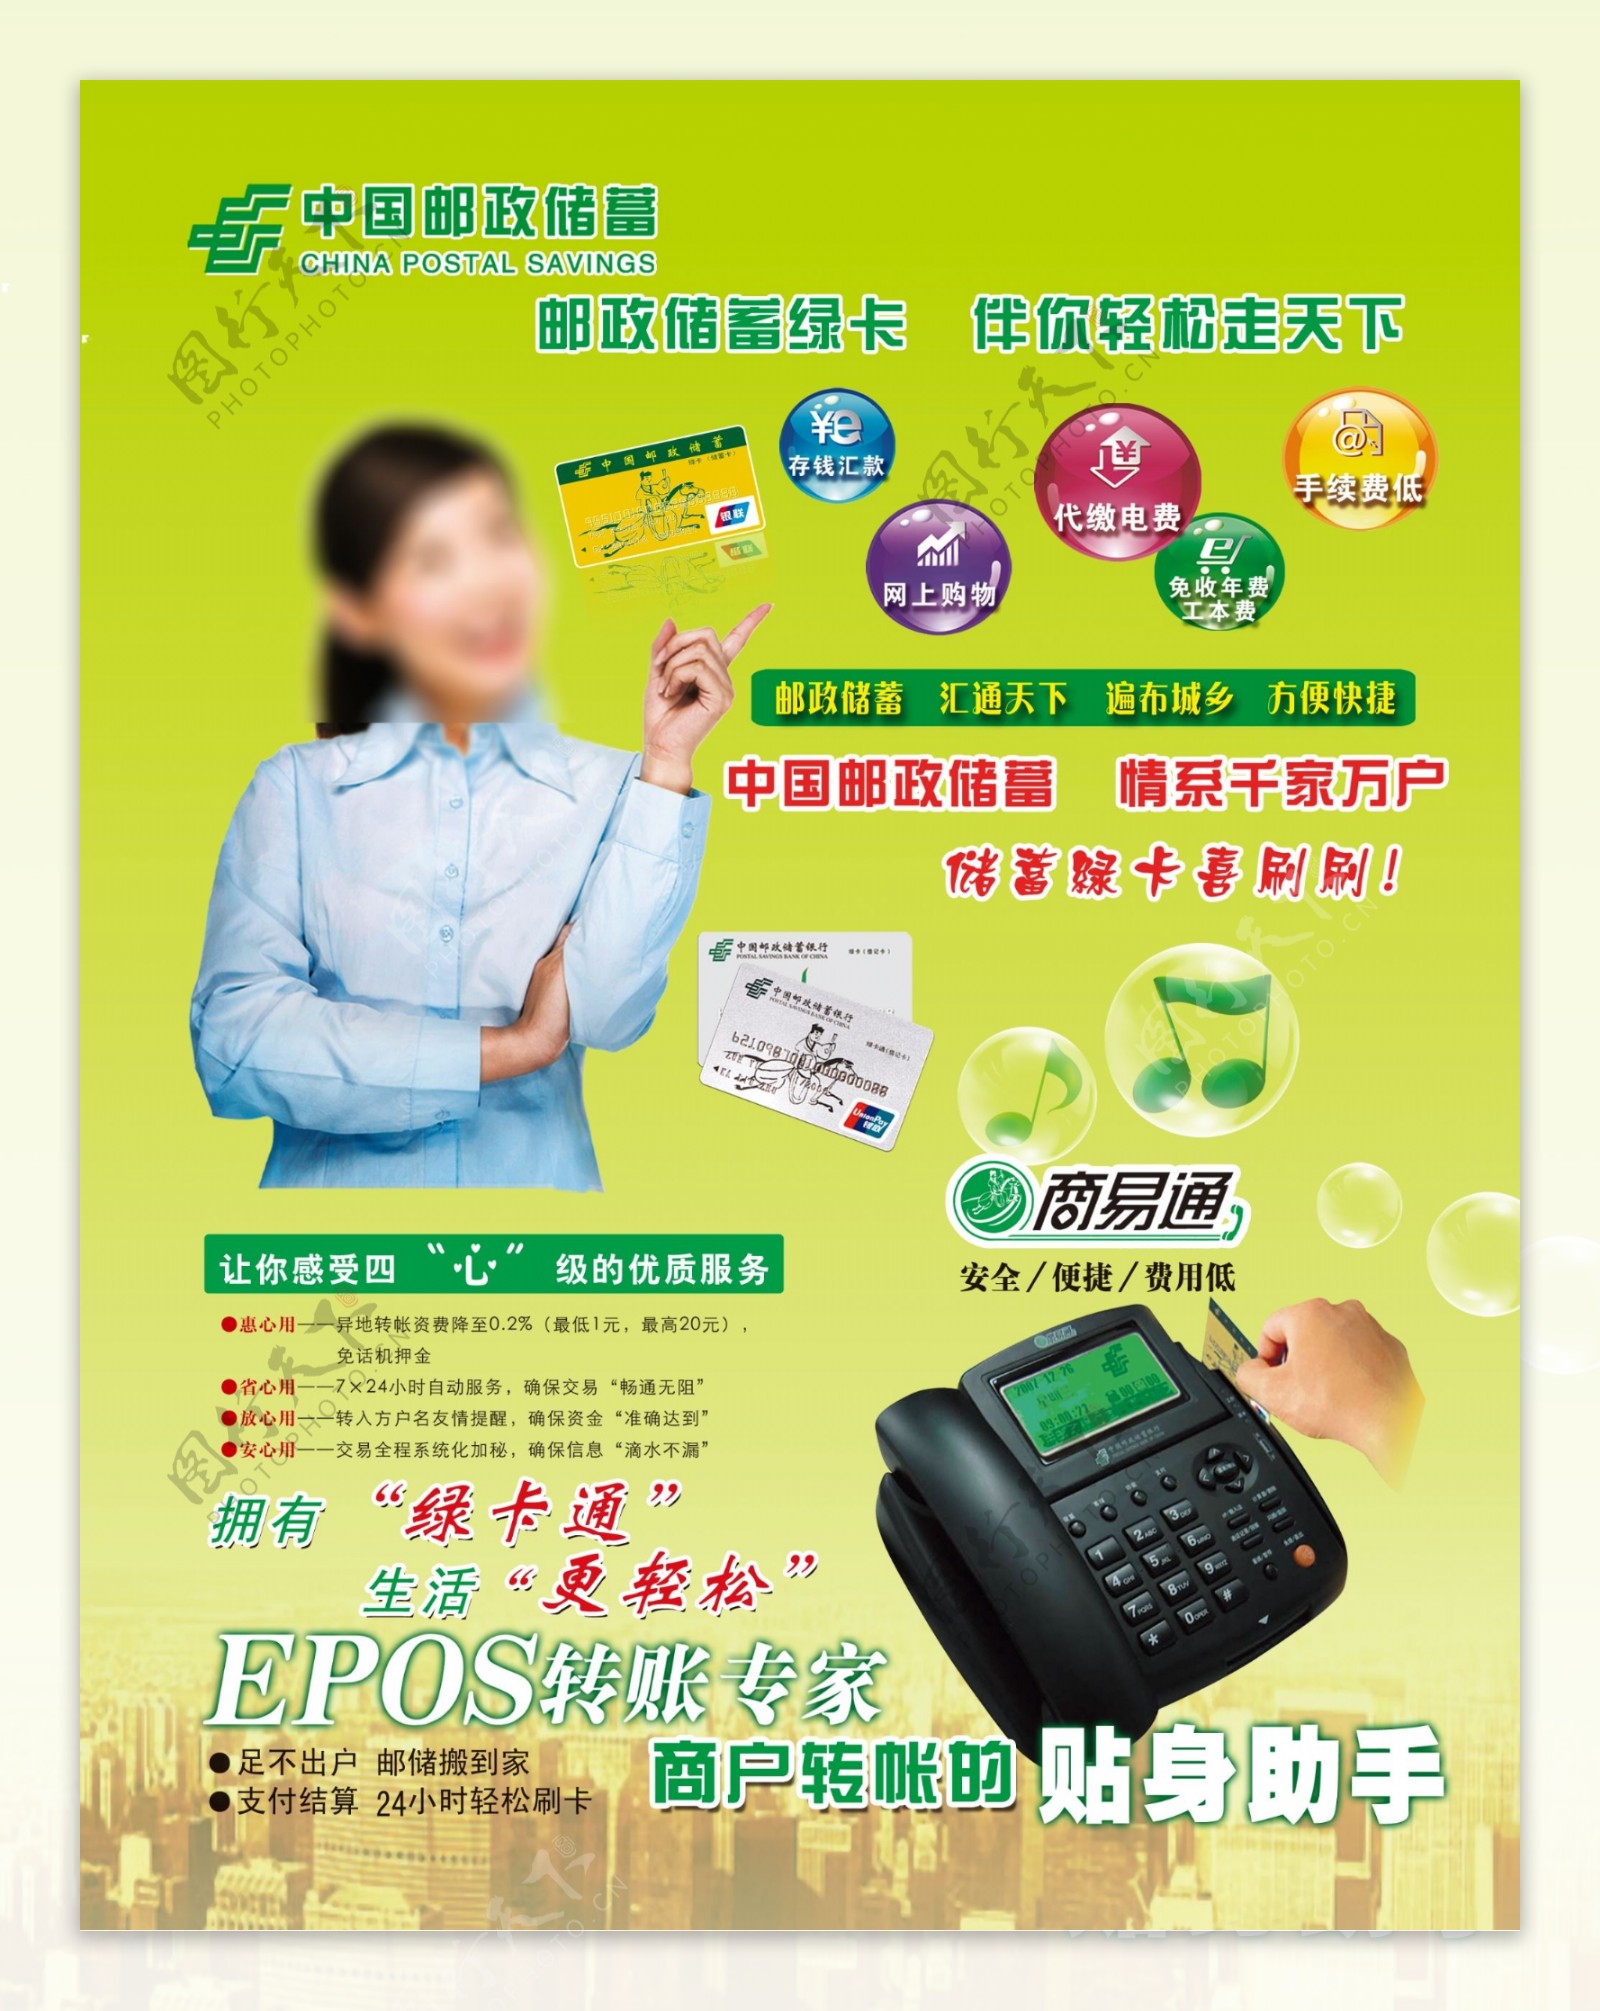 中国邮政储蓄绿卡商易图片